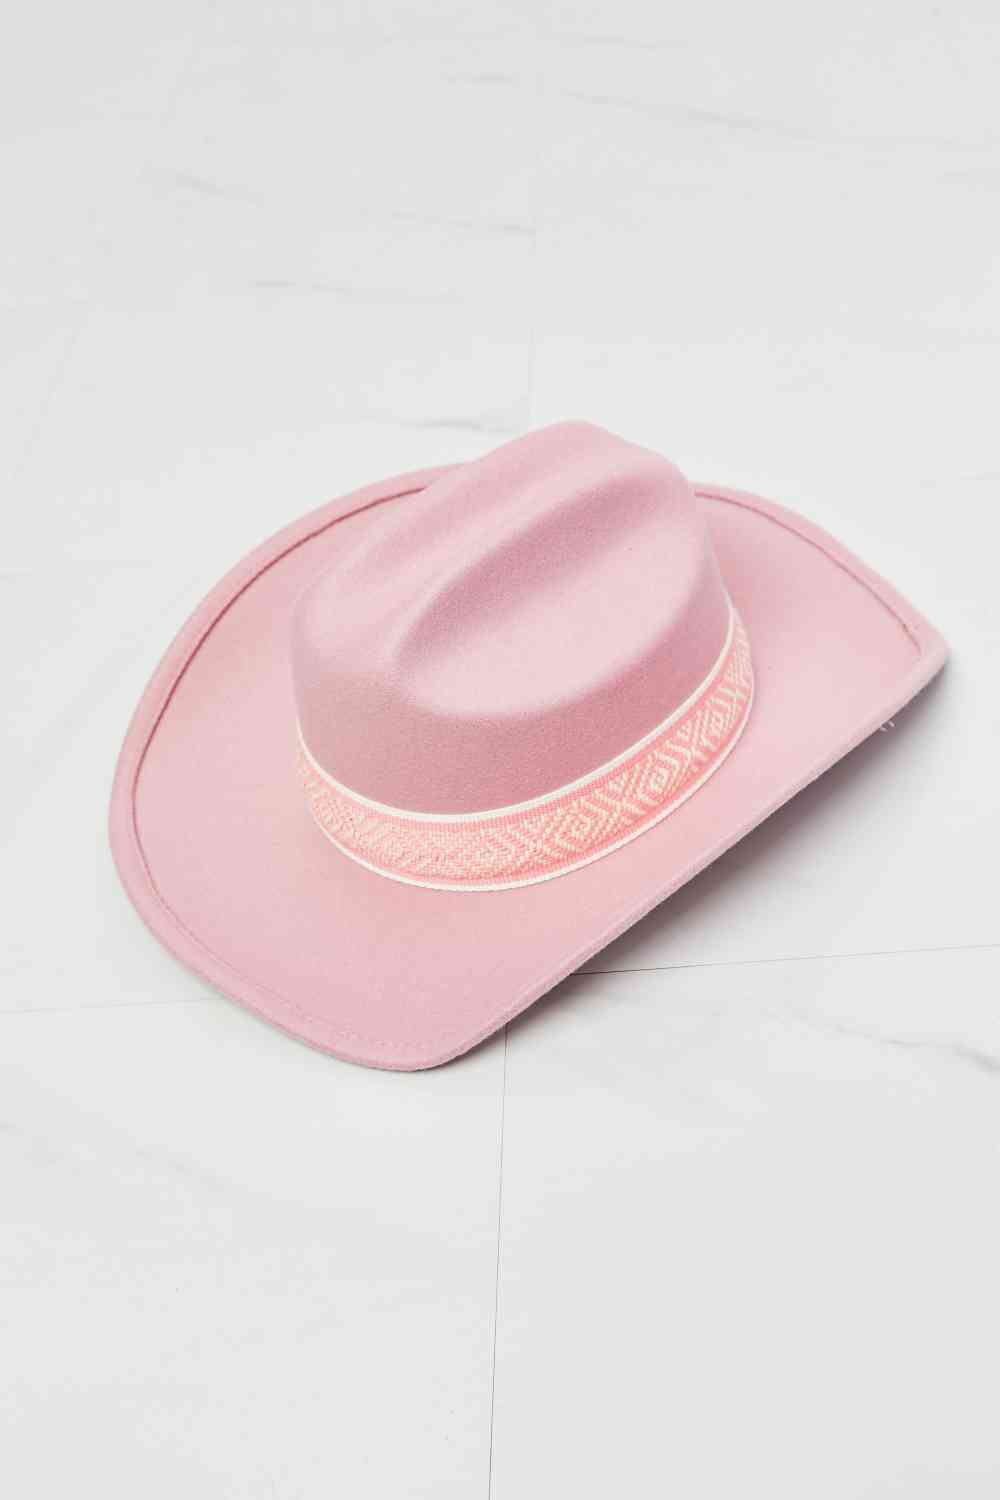 Blush Bronco Cowboy Hat